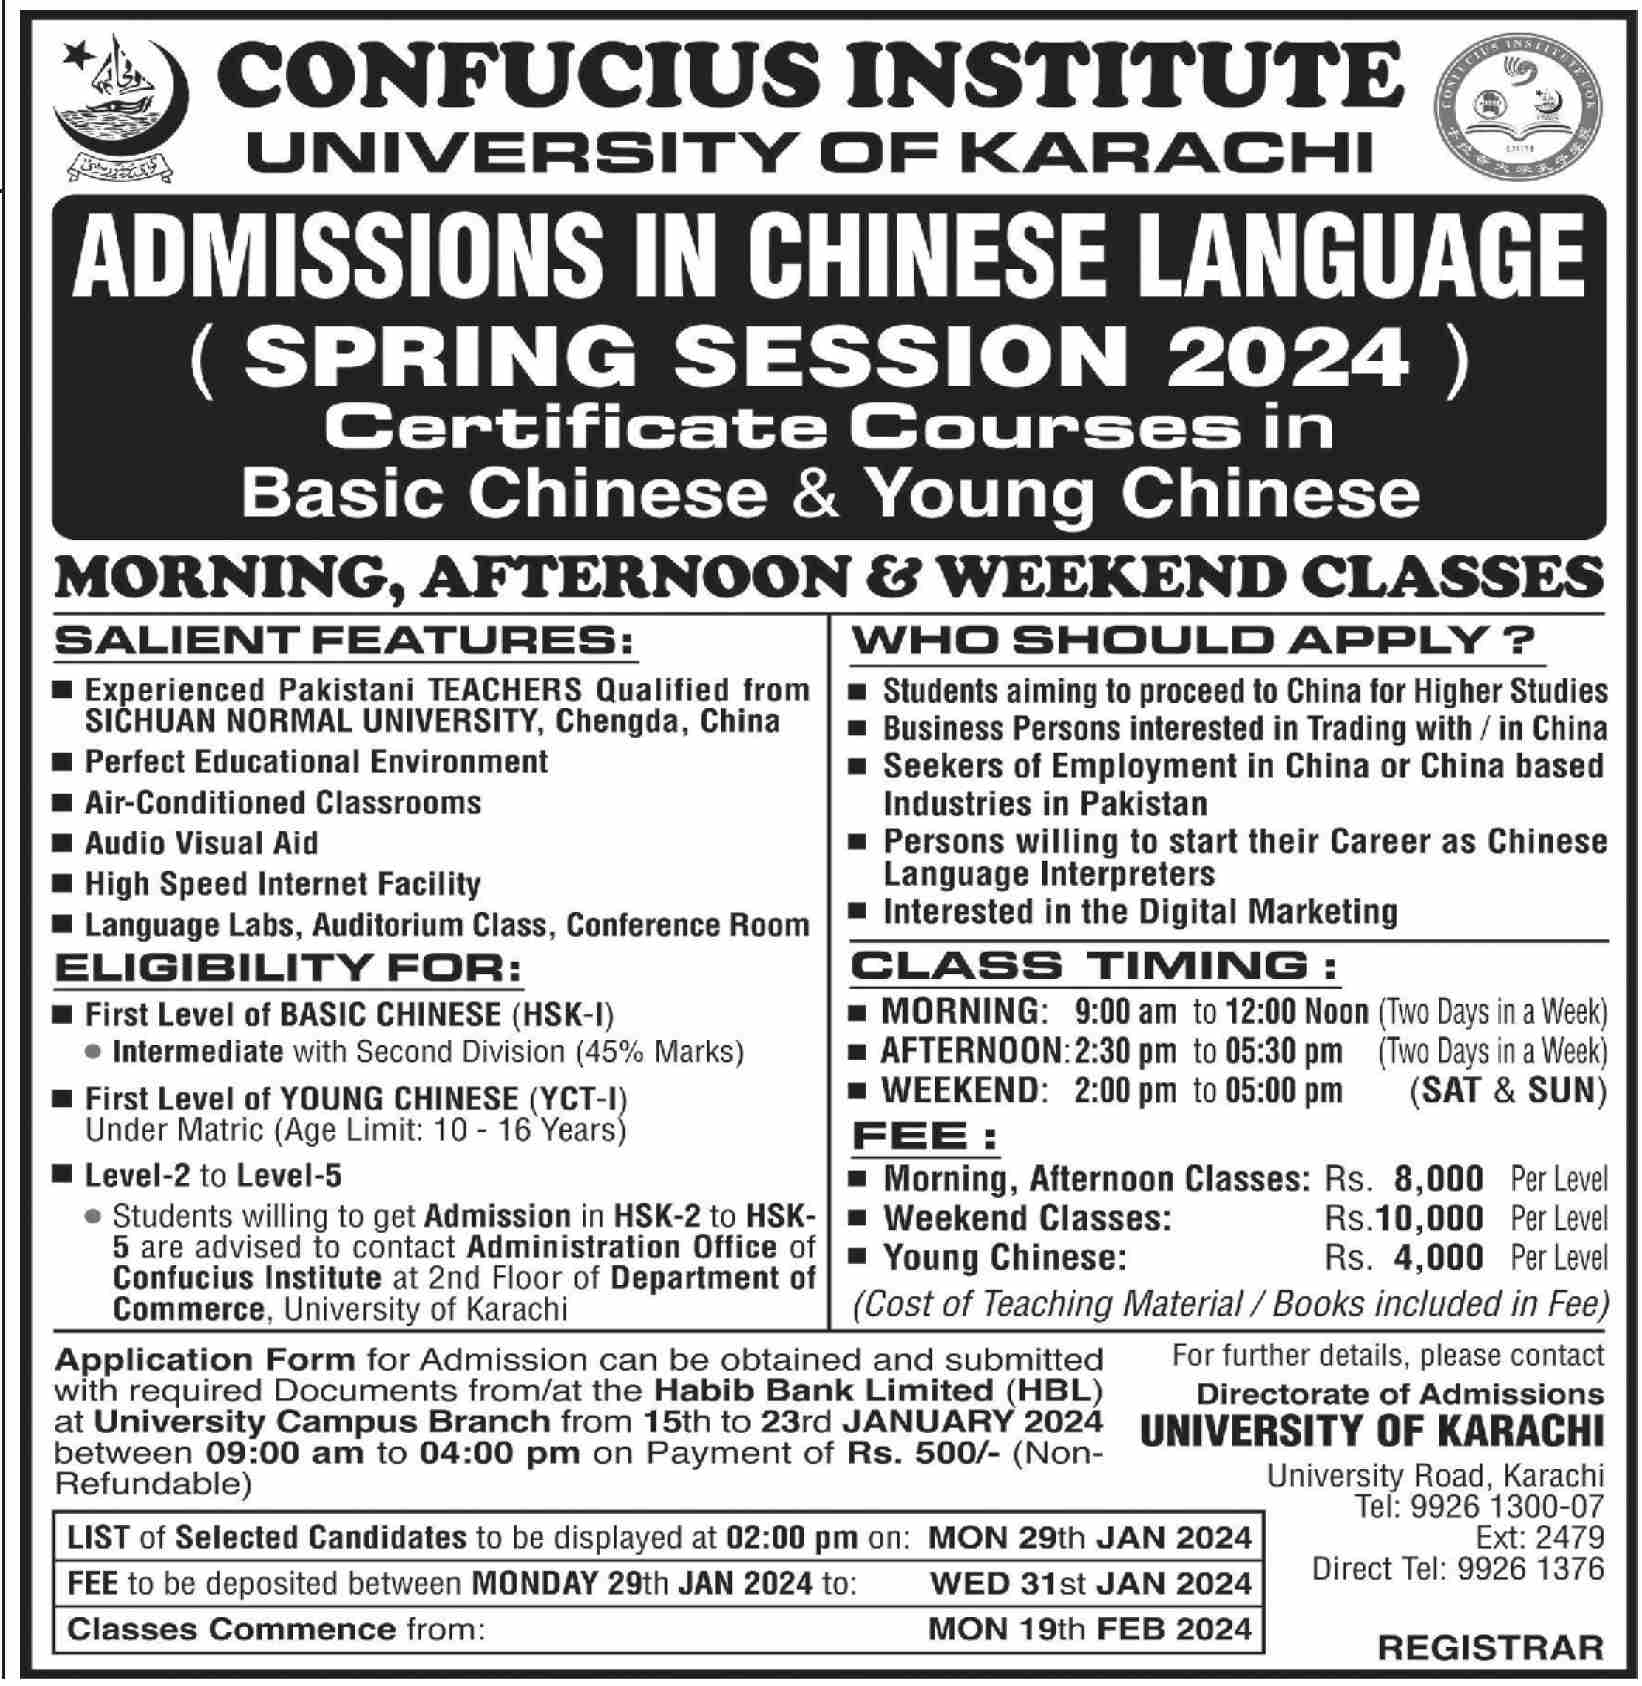 Confucius Institute University of Karachi Admissions in Chinese Language Spring Session 2024